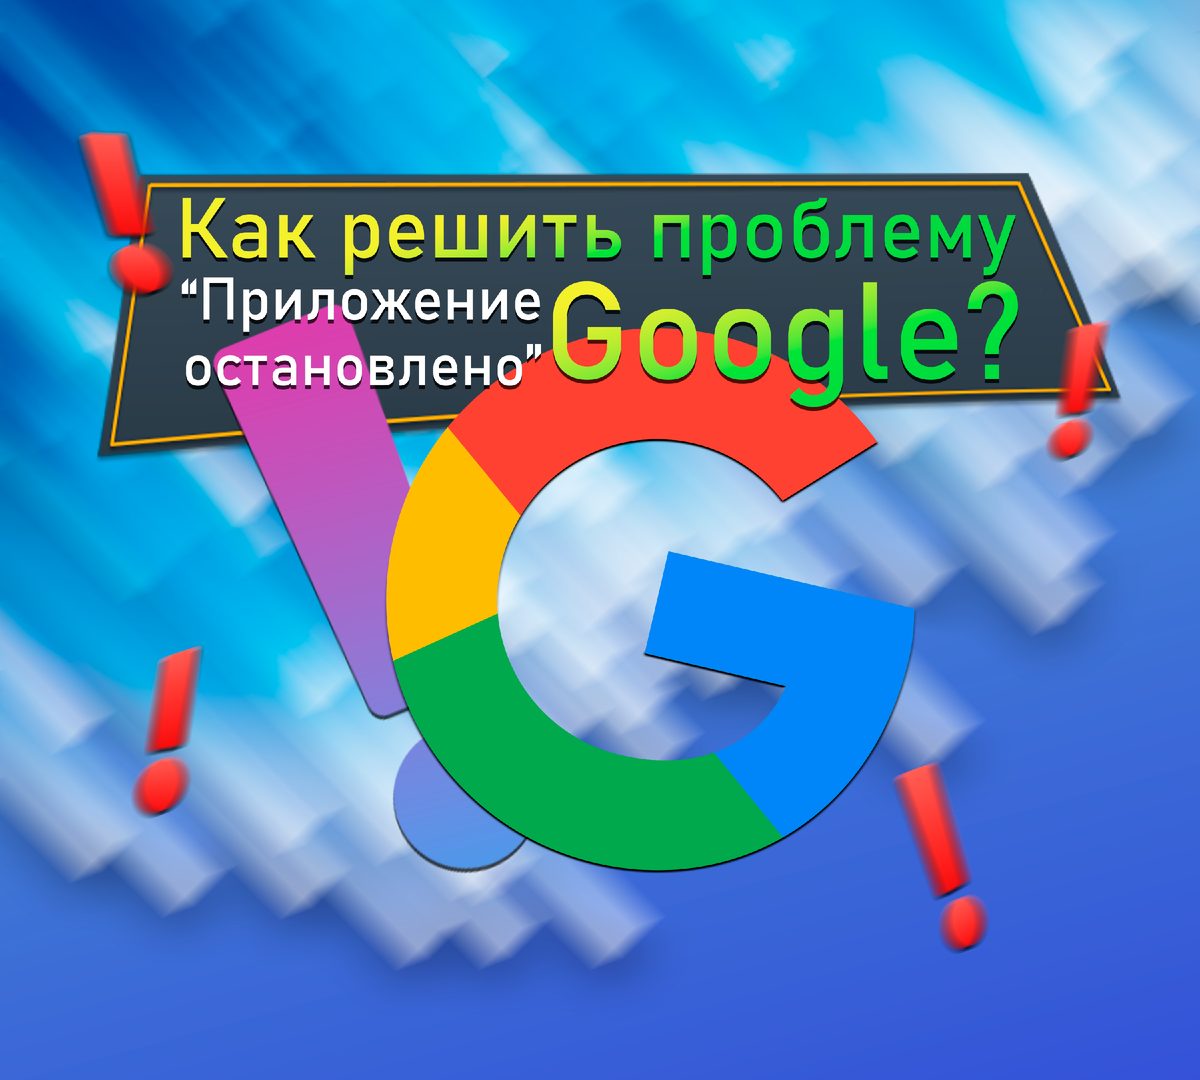 Гугл прекращает работу в россии